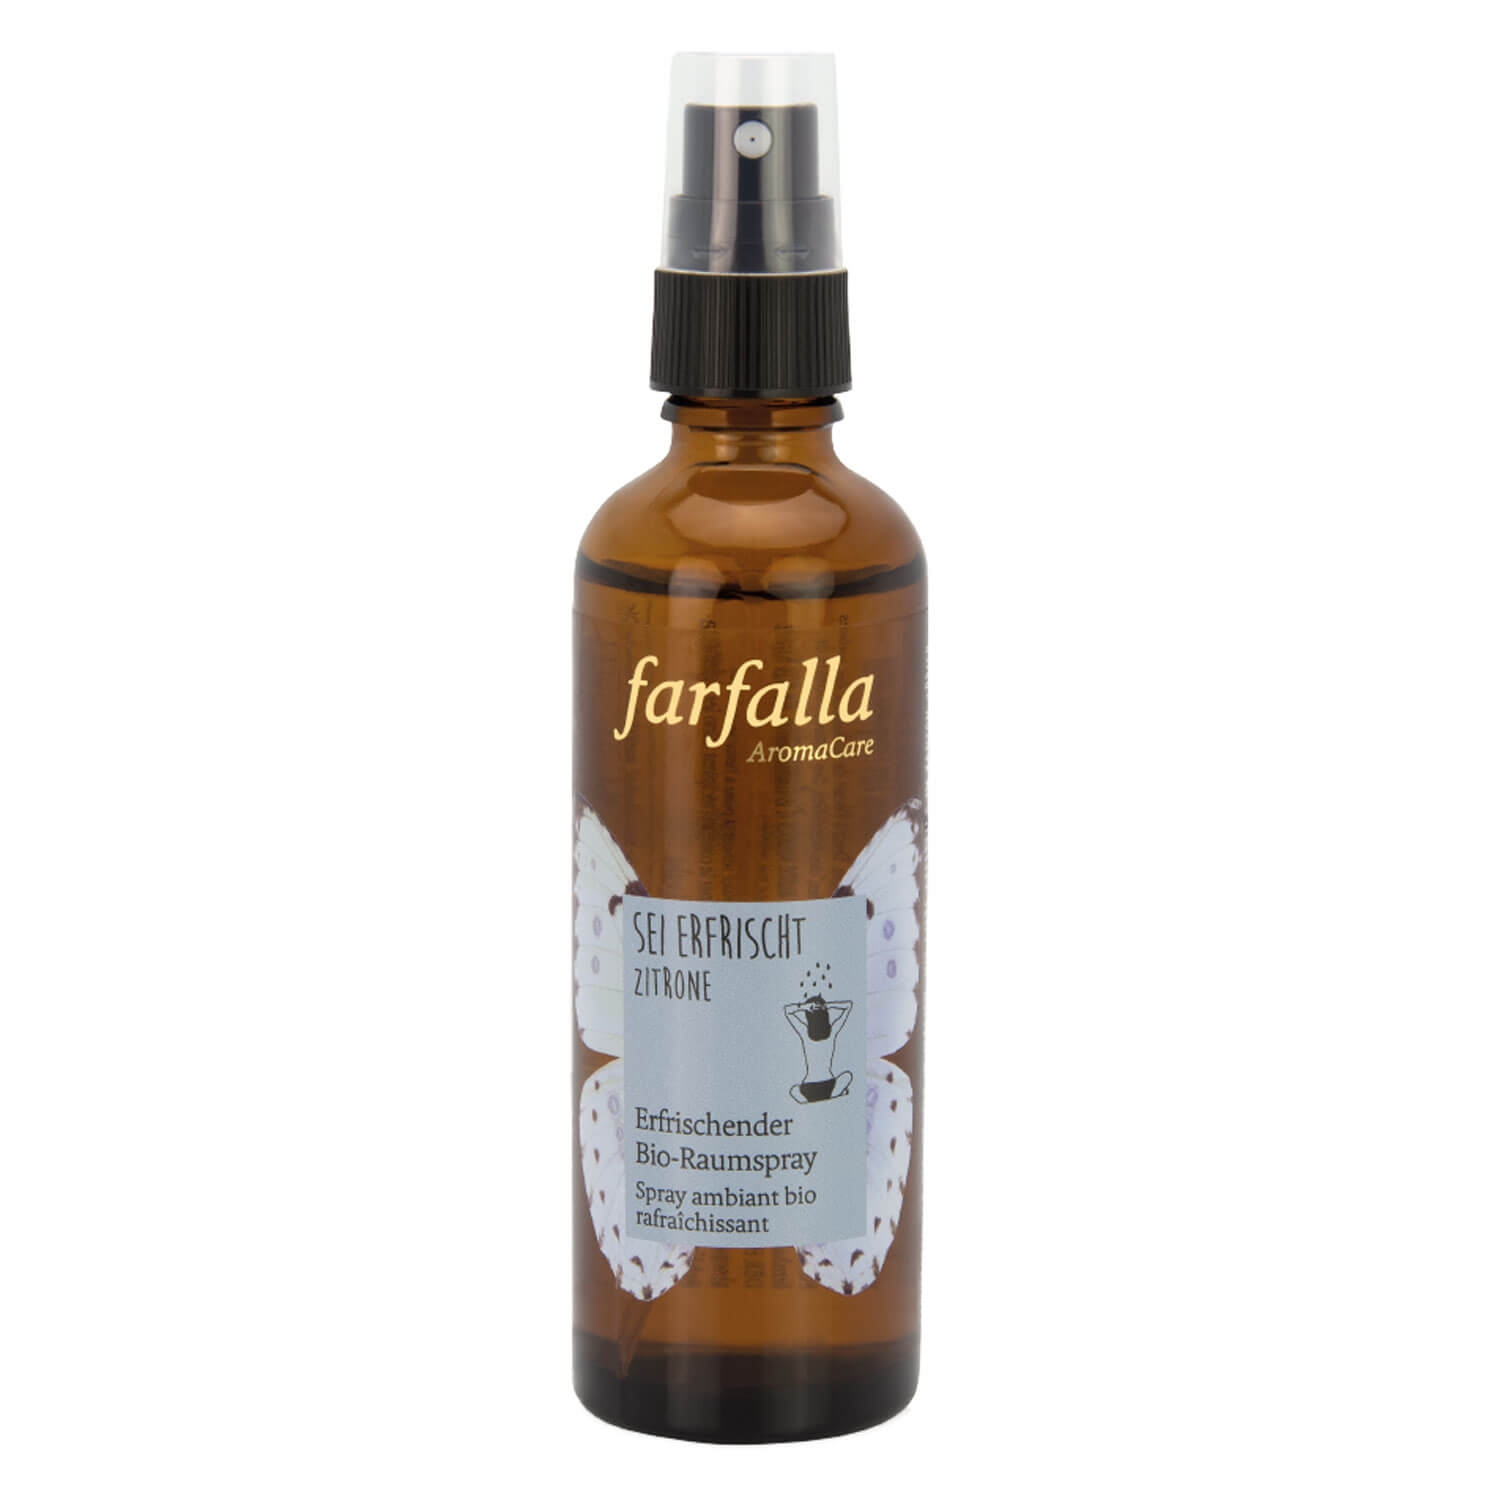 Product image from Farfalla Sei erfrischt - Zitrone Erfrischender Bio-Raumspray